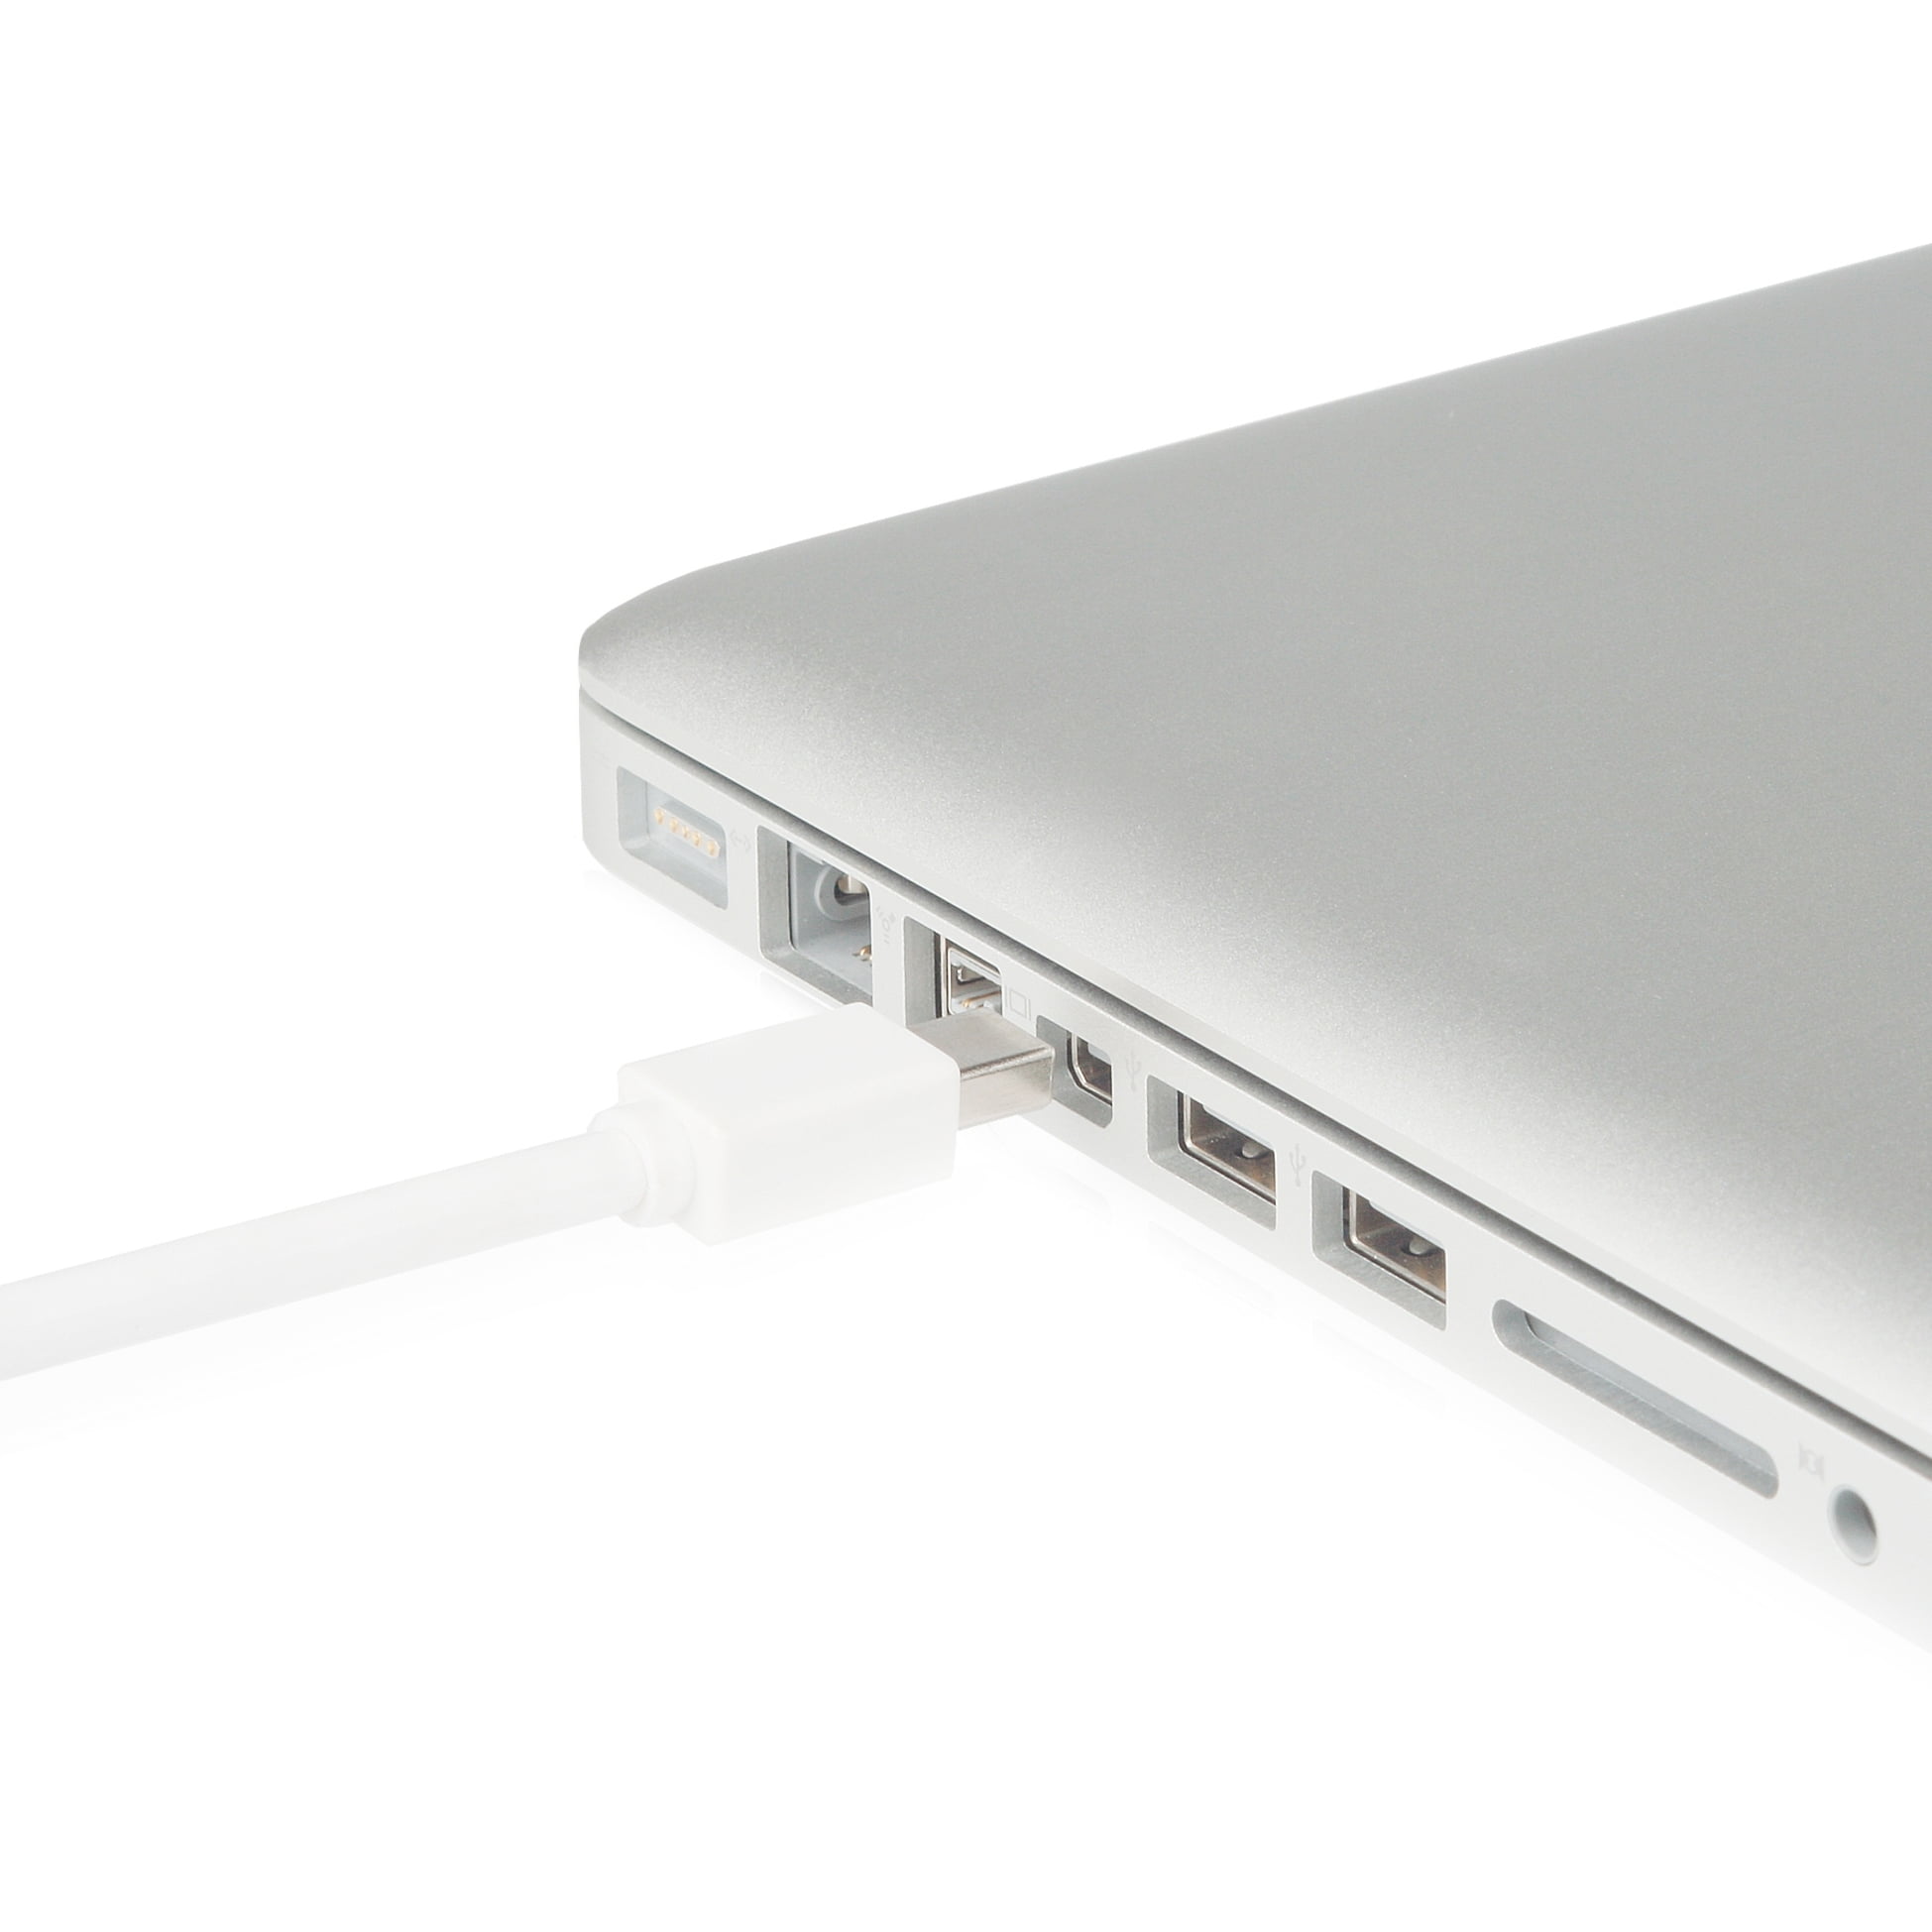 Adaptador Mini DisplayPort a HDMI de Moshi, con sonido y vídeo simultáneo  para nuestro Mac: análisis